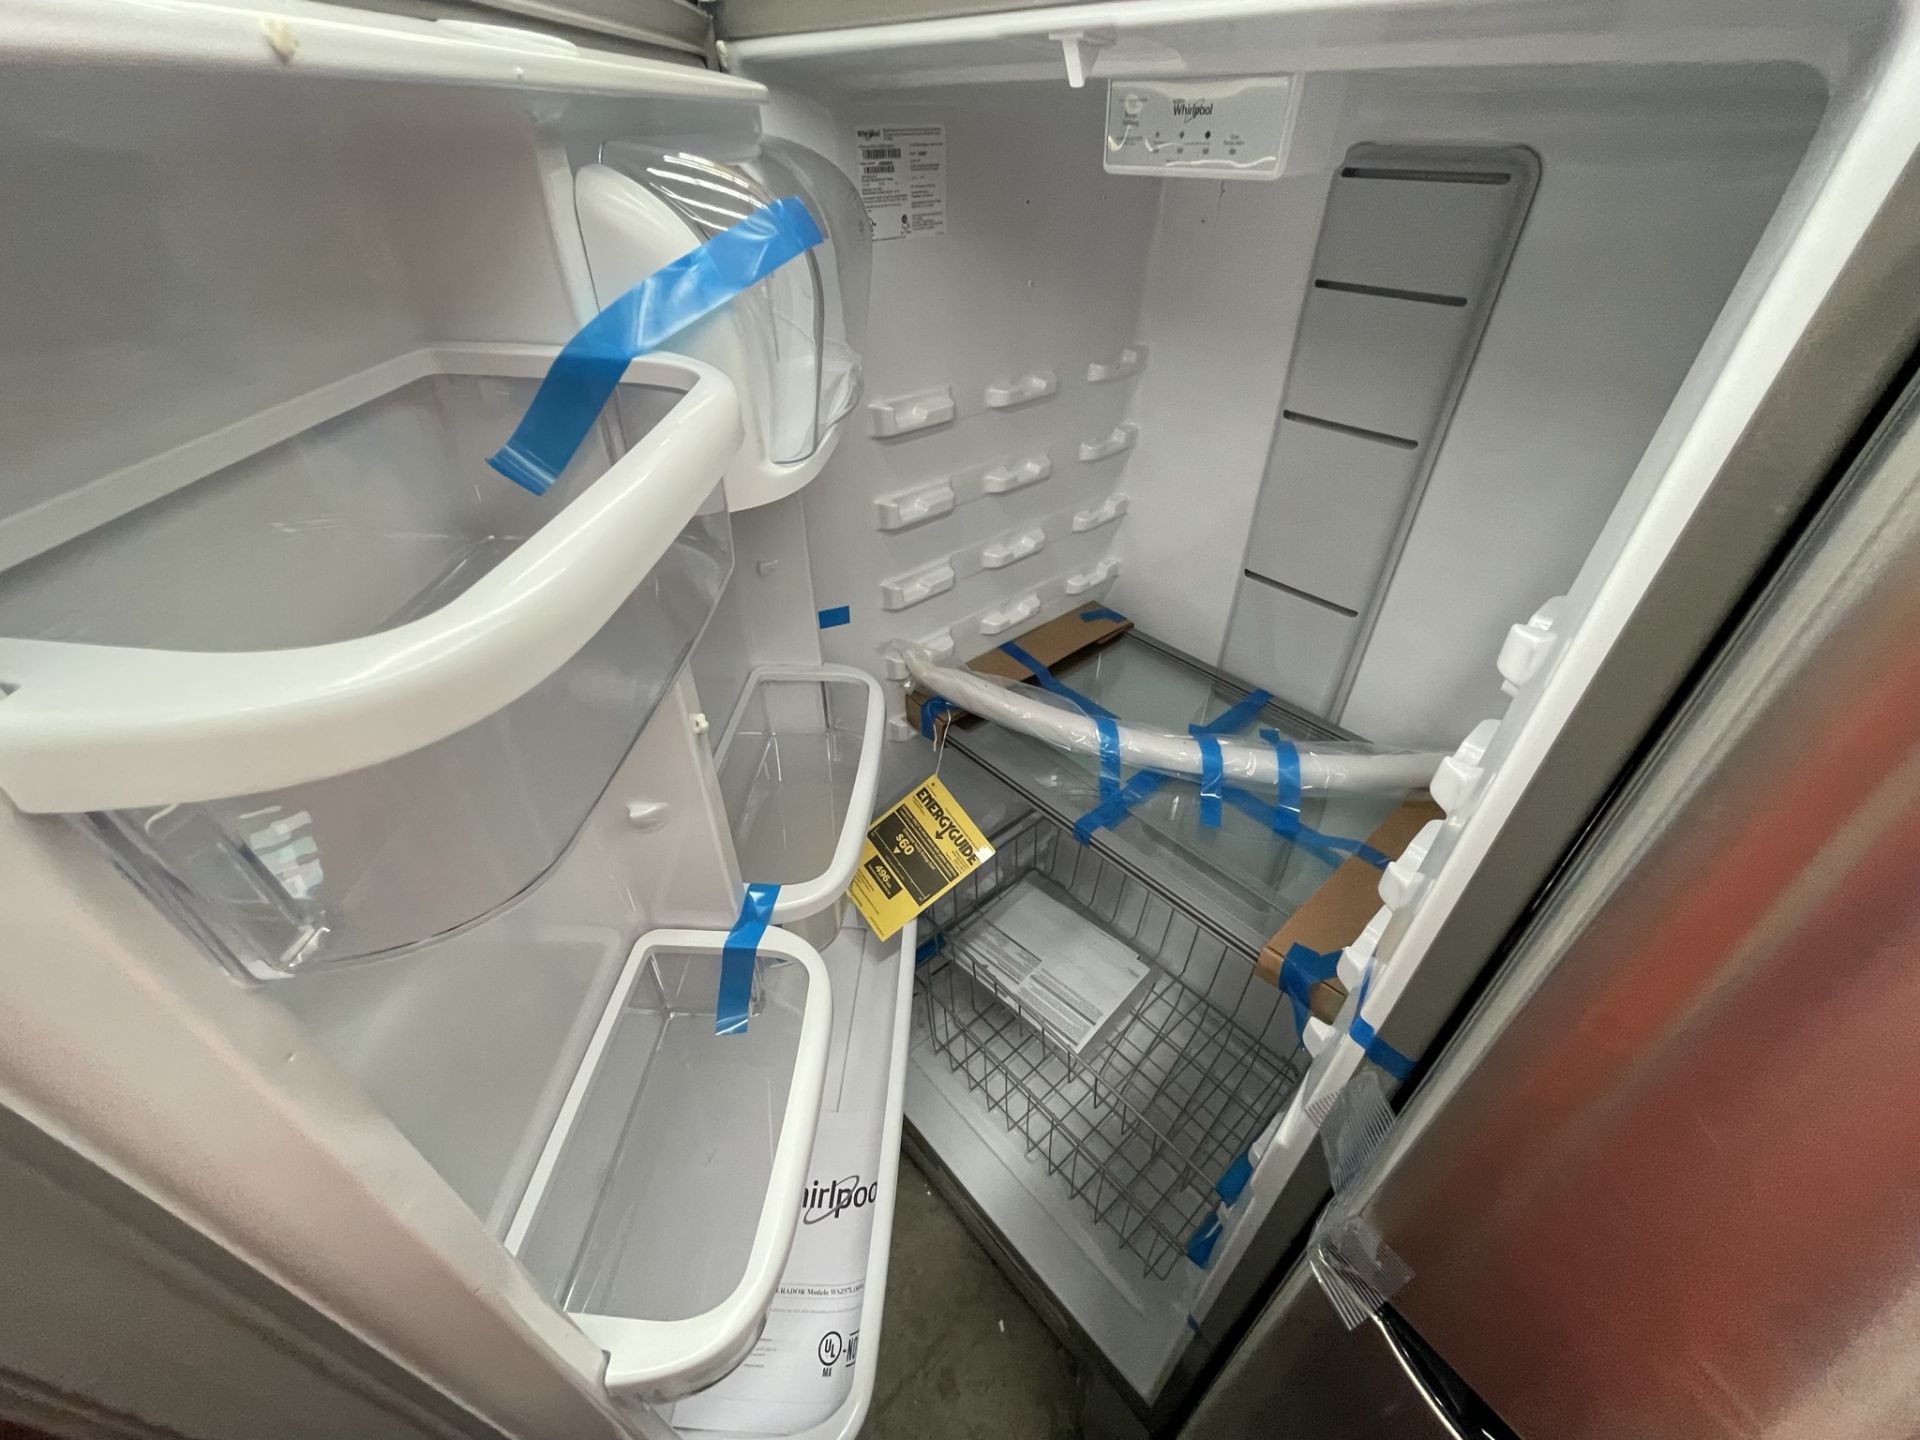 (EQUIPO NUEVO) 1 Refrigerador Marca WHIRLPOOL, Modelo WSZ57L18DM, Serie 004291, Color GRIS, (Nuevo, - Image 7 of 8